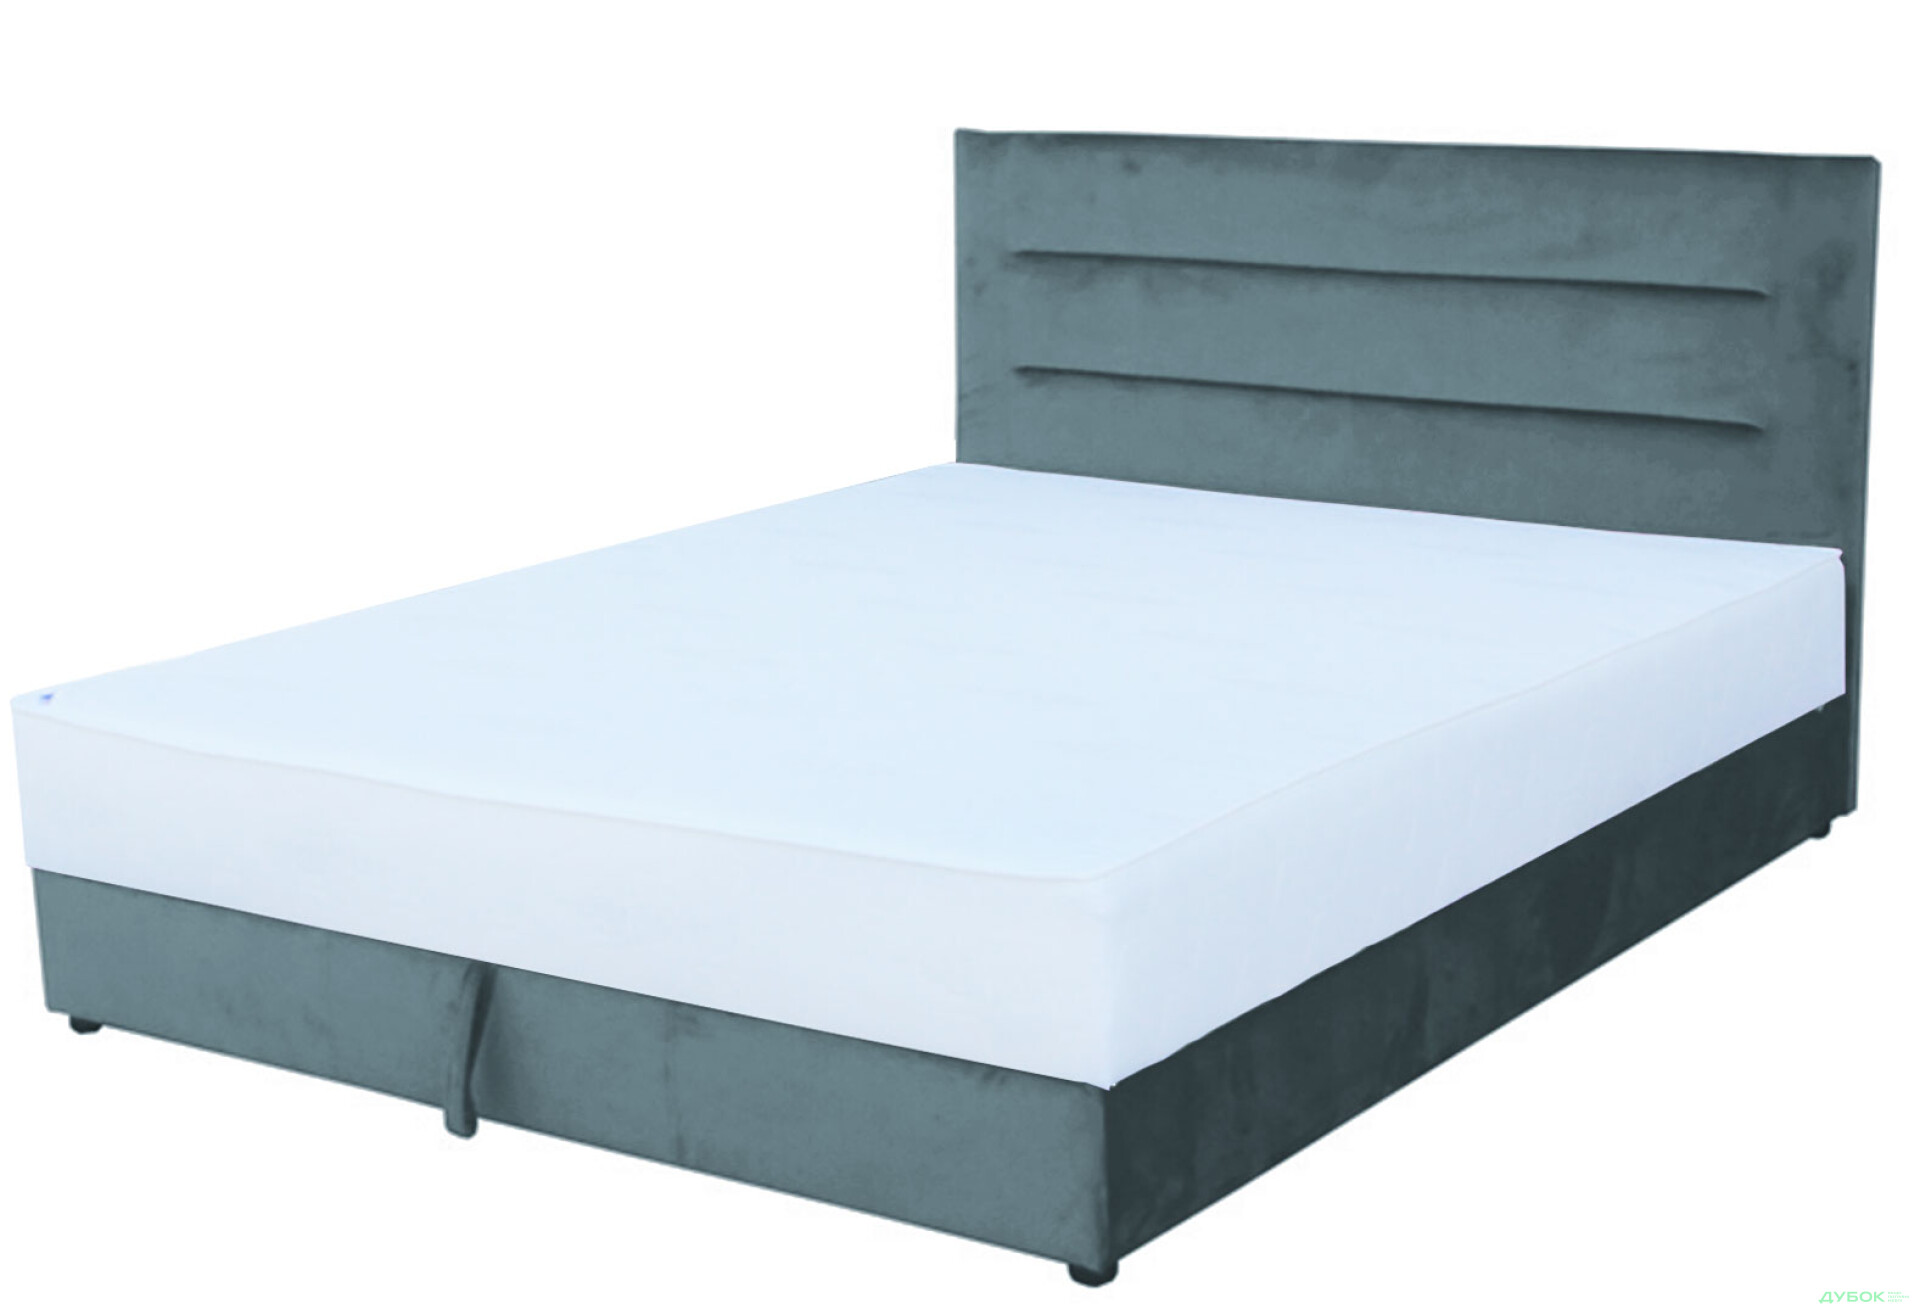 Фото 7 - Ліжко-подіум Vika Горизонт 160х200 см підйомне, матрац жакард, незалежний блок